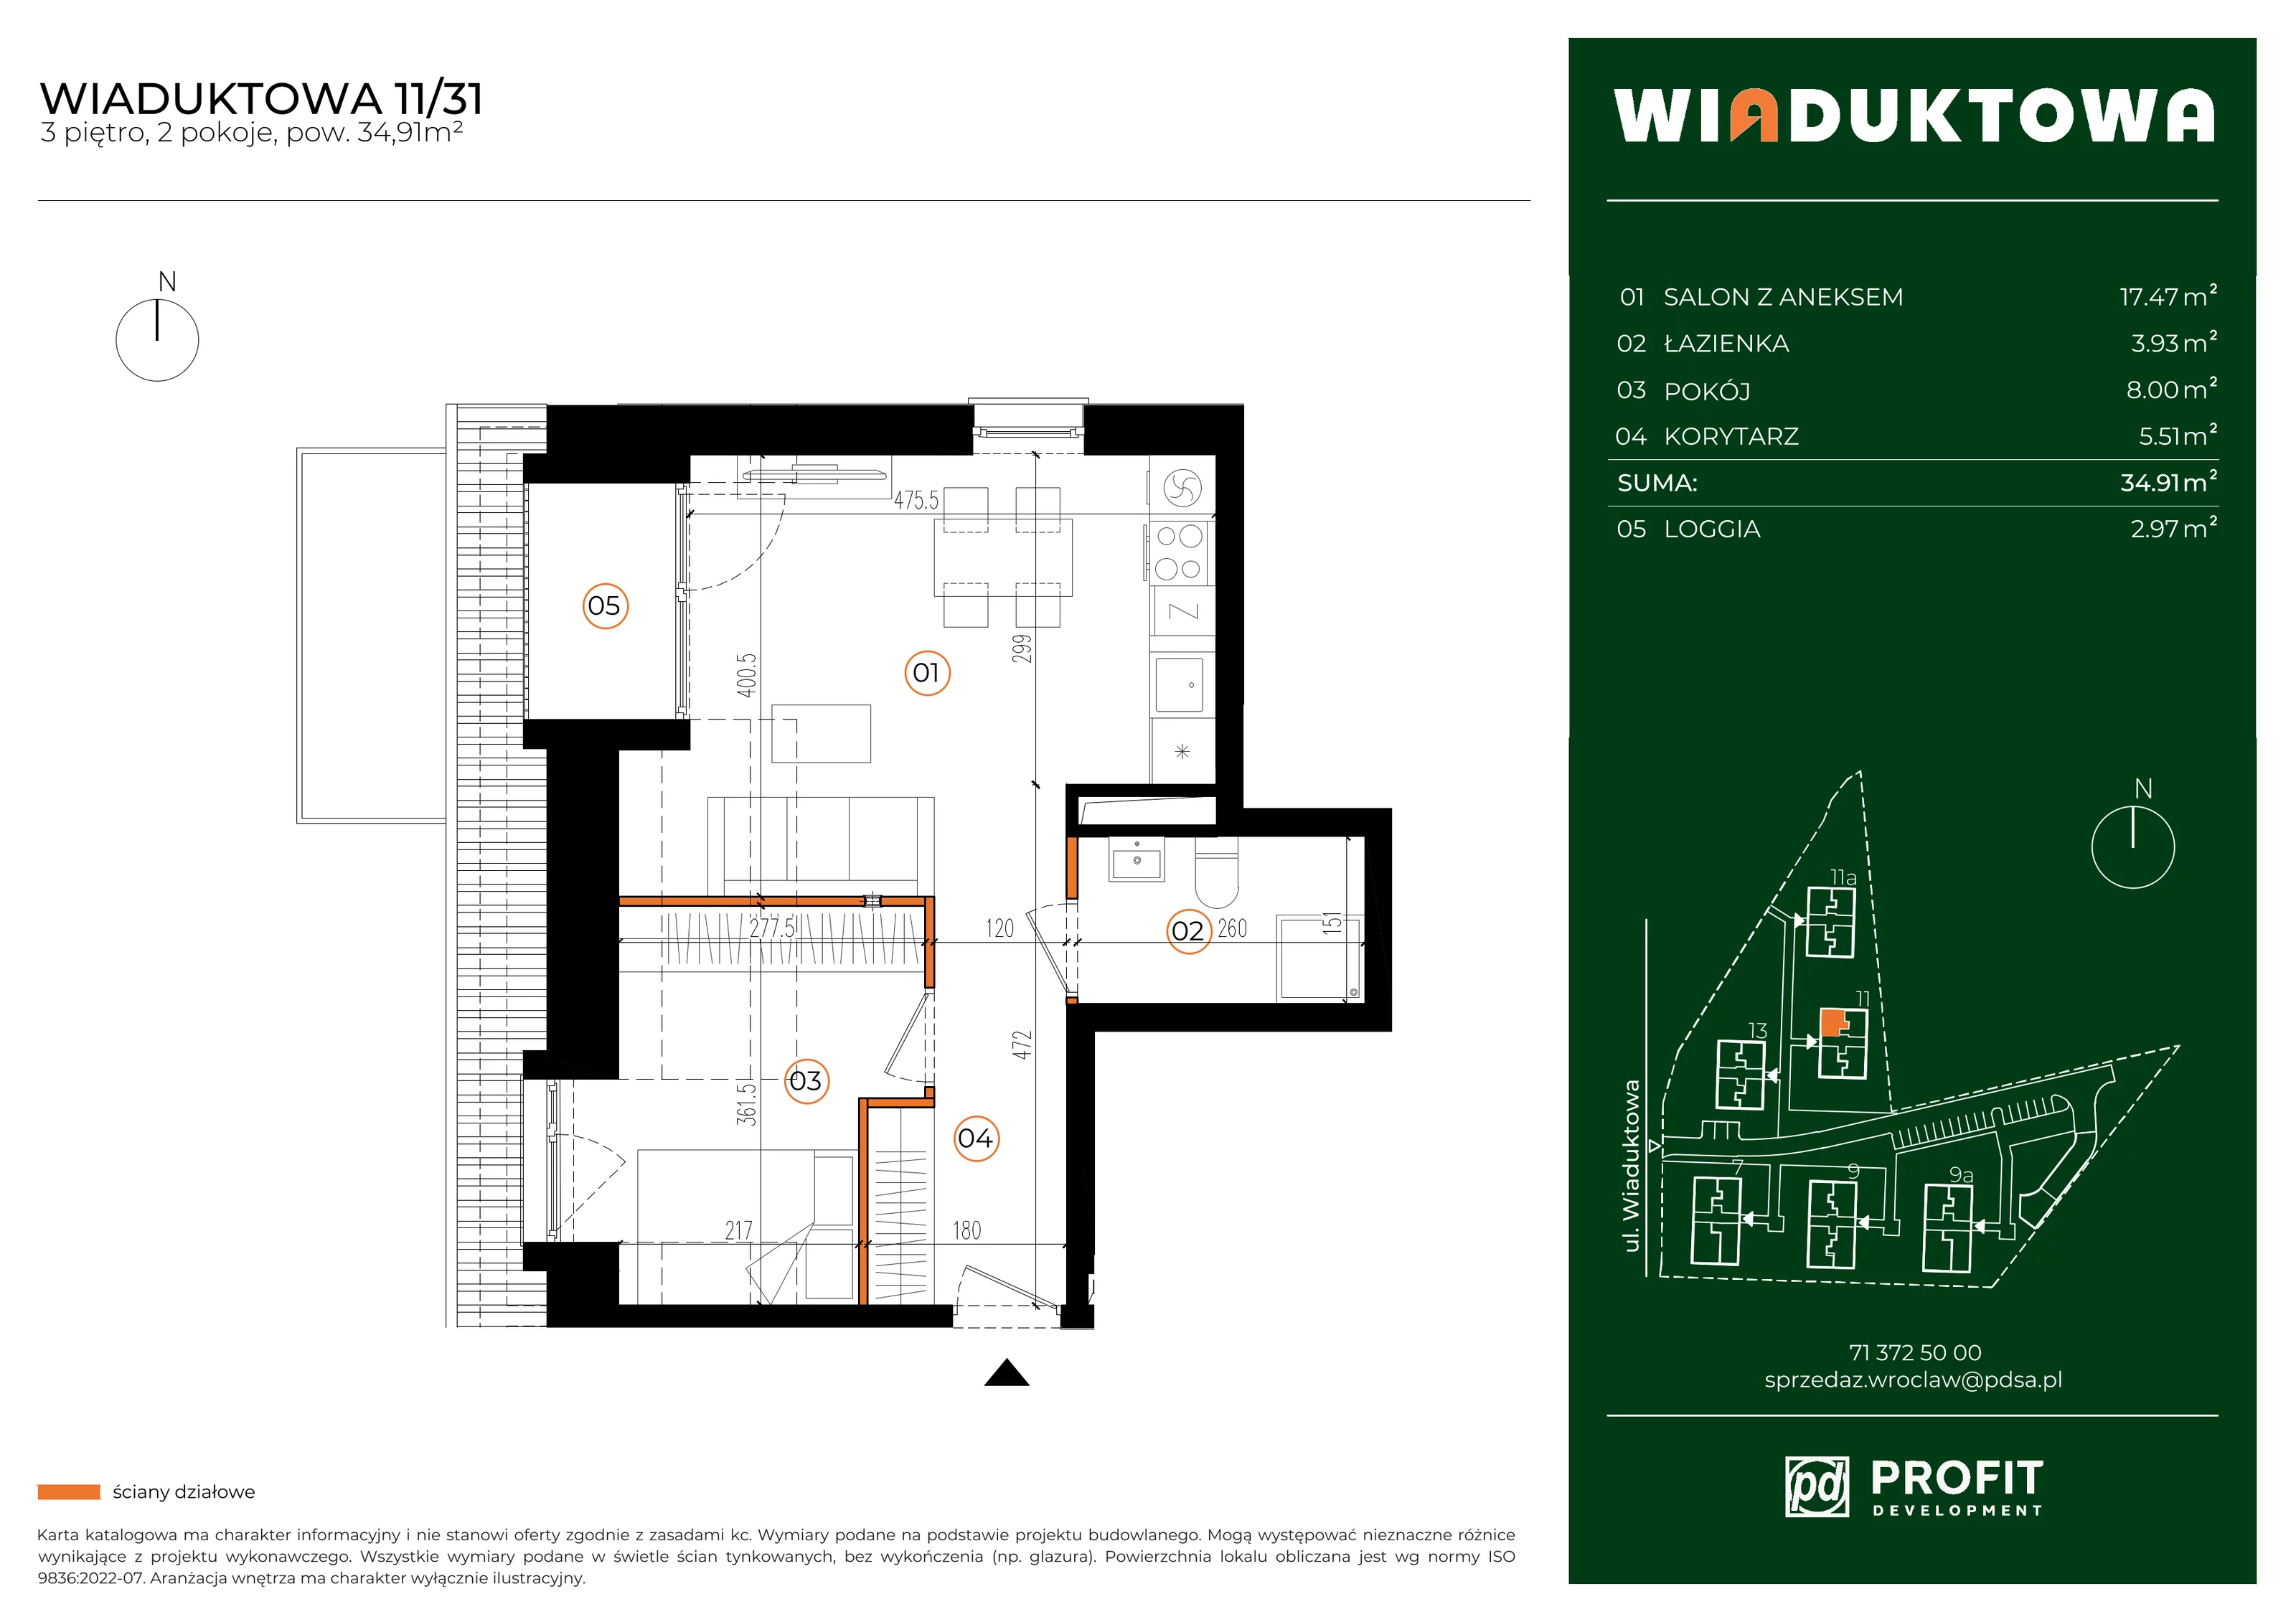 Mieszkanie 34,91 m², piętro 3, oferta nr WI/11/31, Wiaduktowa, Wrocław, Krzyki-Partynice, Krzyki, ul. Wiaduktowa